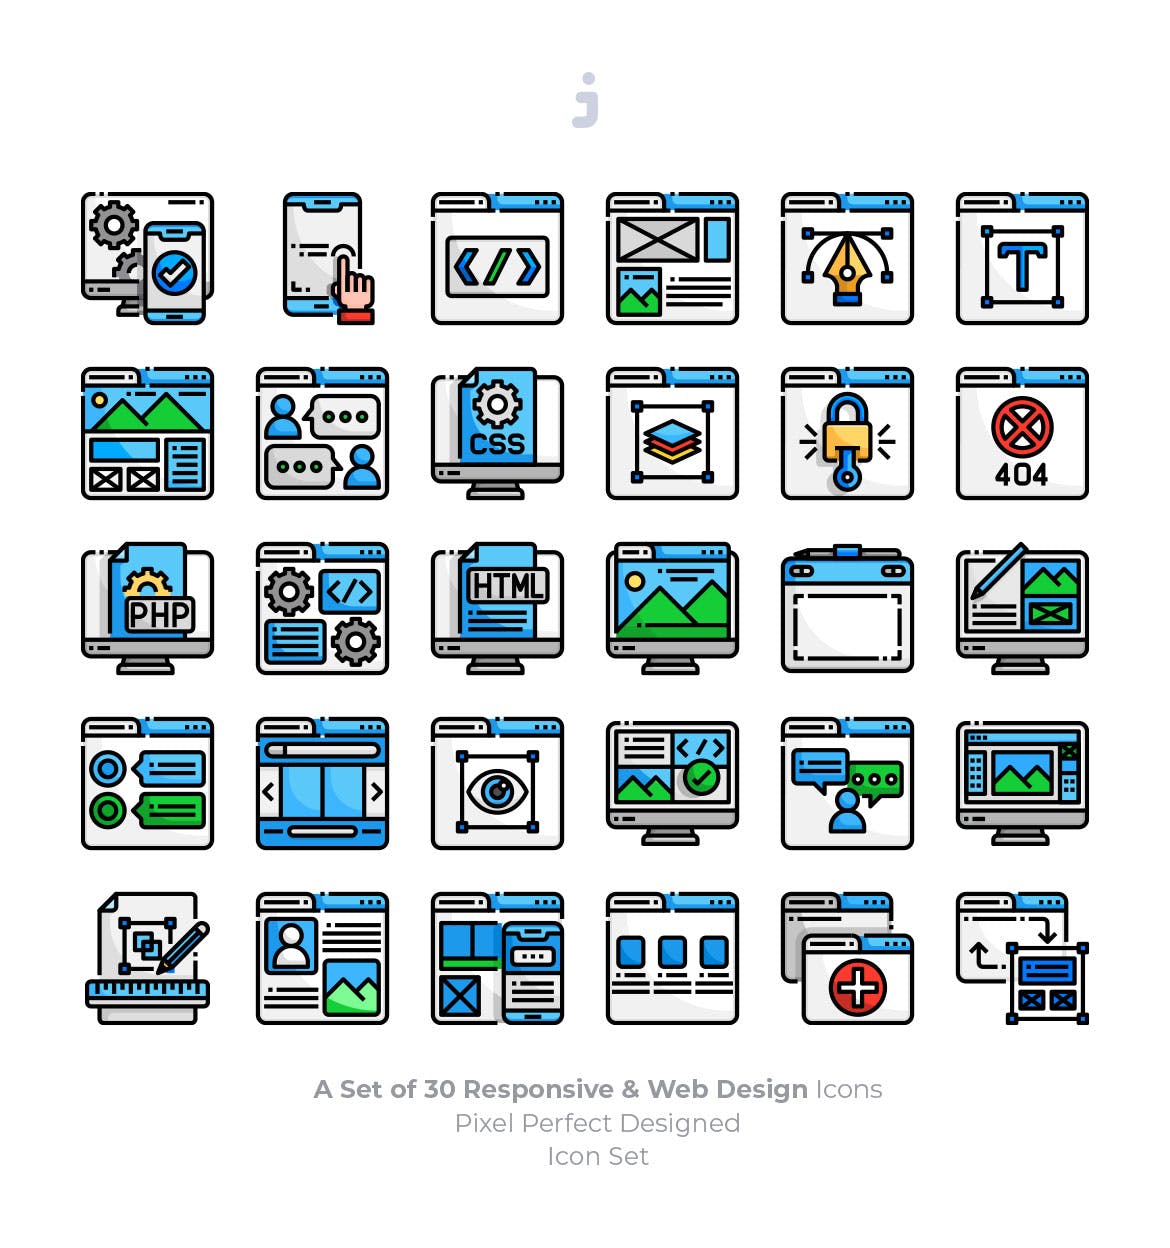 30枚彩色响应式网站设计矢量素材库精选图标 30 Responsive & Web Design Icons插图(1)